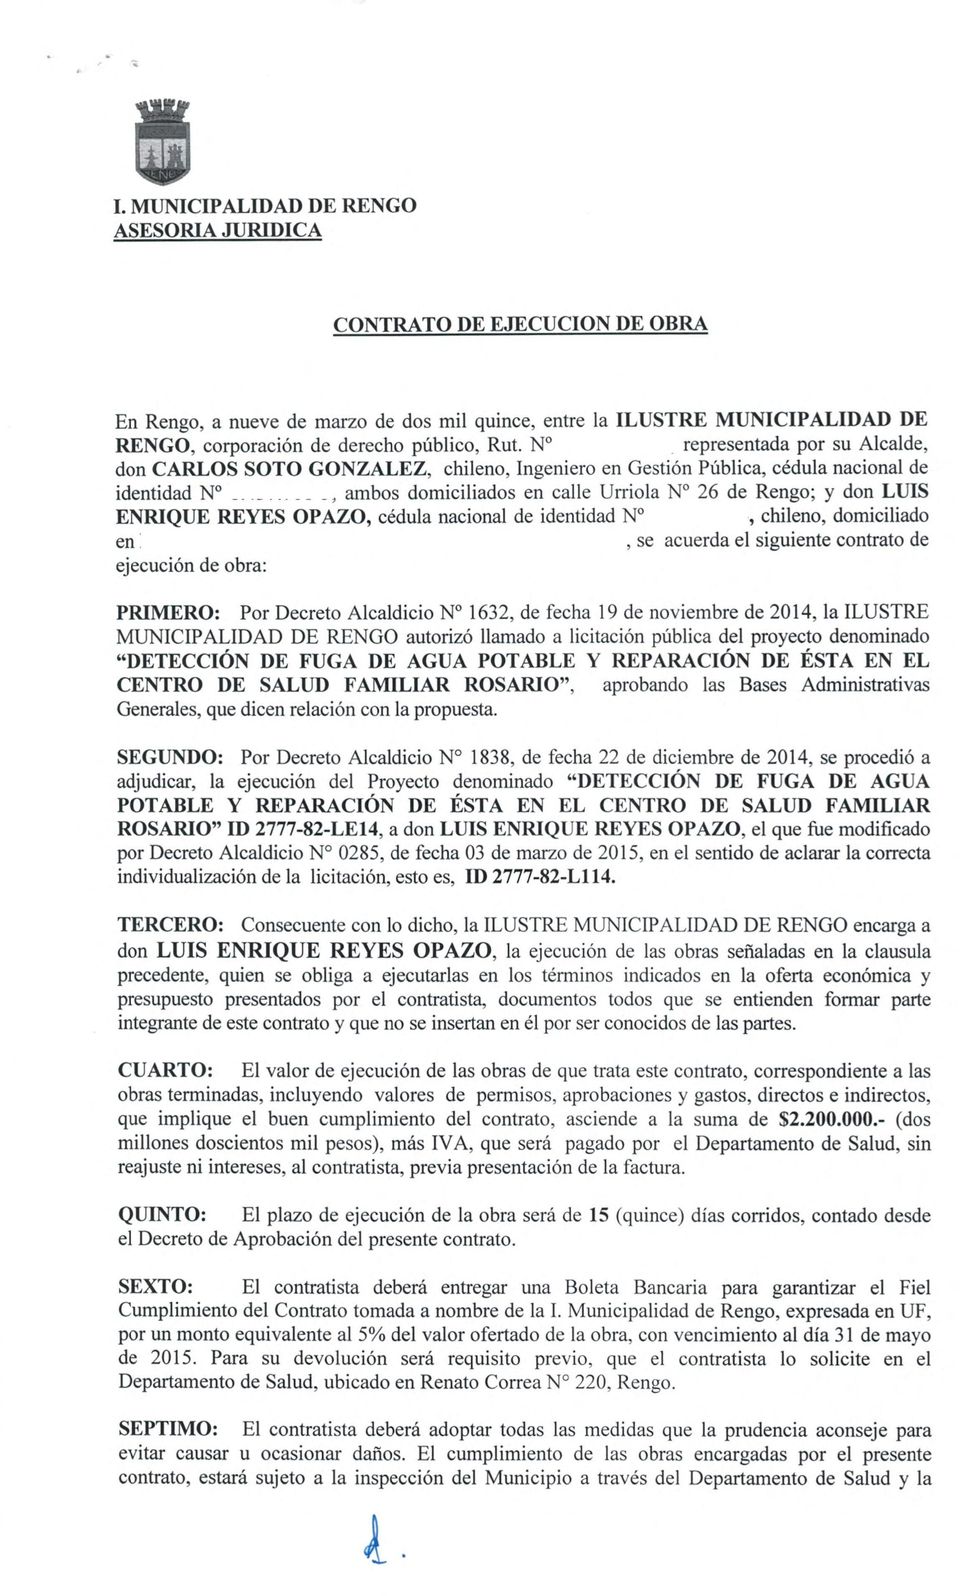 REYES OPAZO, cedula nacional de identidad N, chileno, domiciliado en, se acuerda el siguiente contrato de ejecucion de obra: PRIMERO: Por Decreto Alcaldicio N 1632, de fecha 19 de noviembre de 2014,